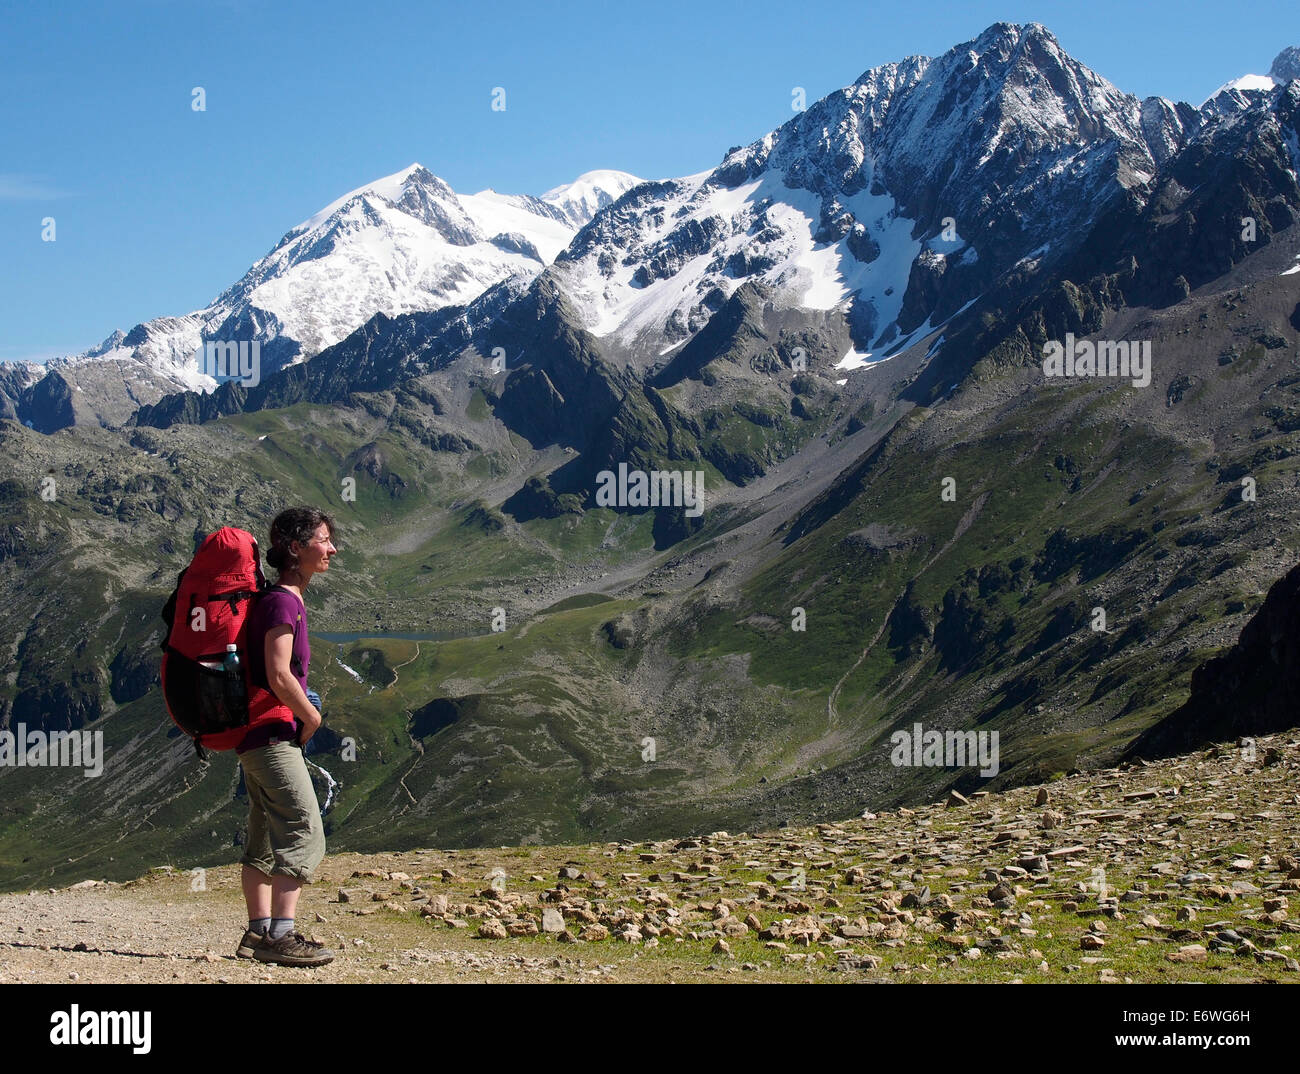 Tour of Mont Blanc, Col du bonhomme, Alps, France Stock Photo